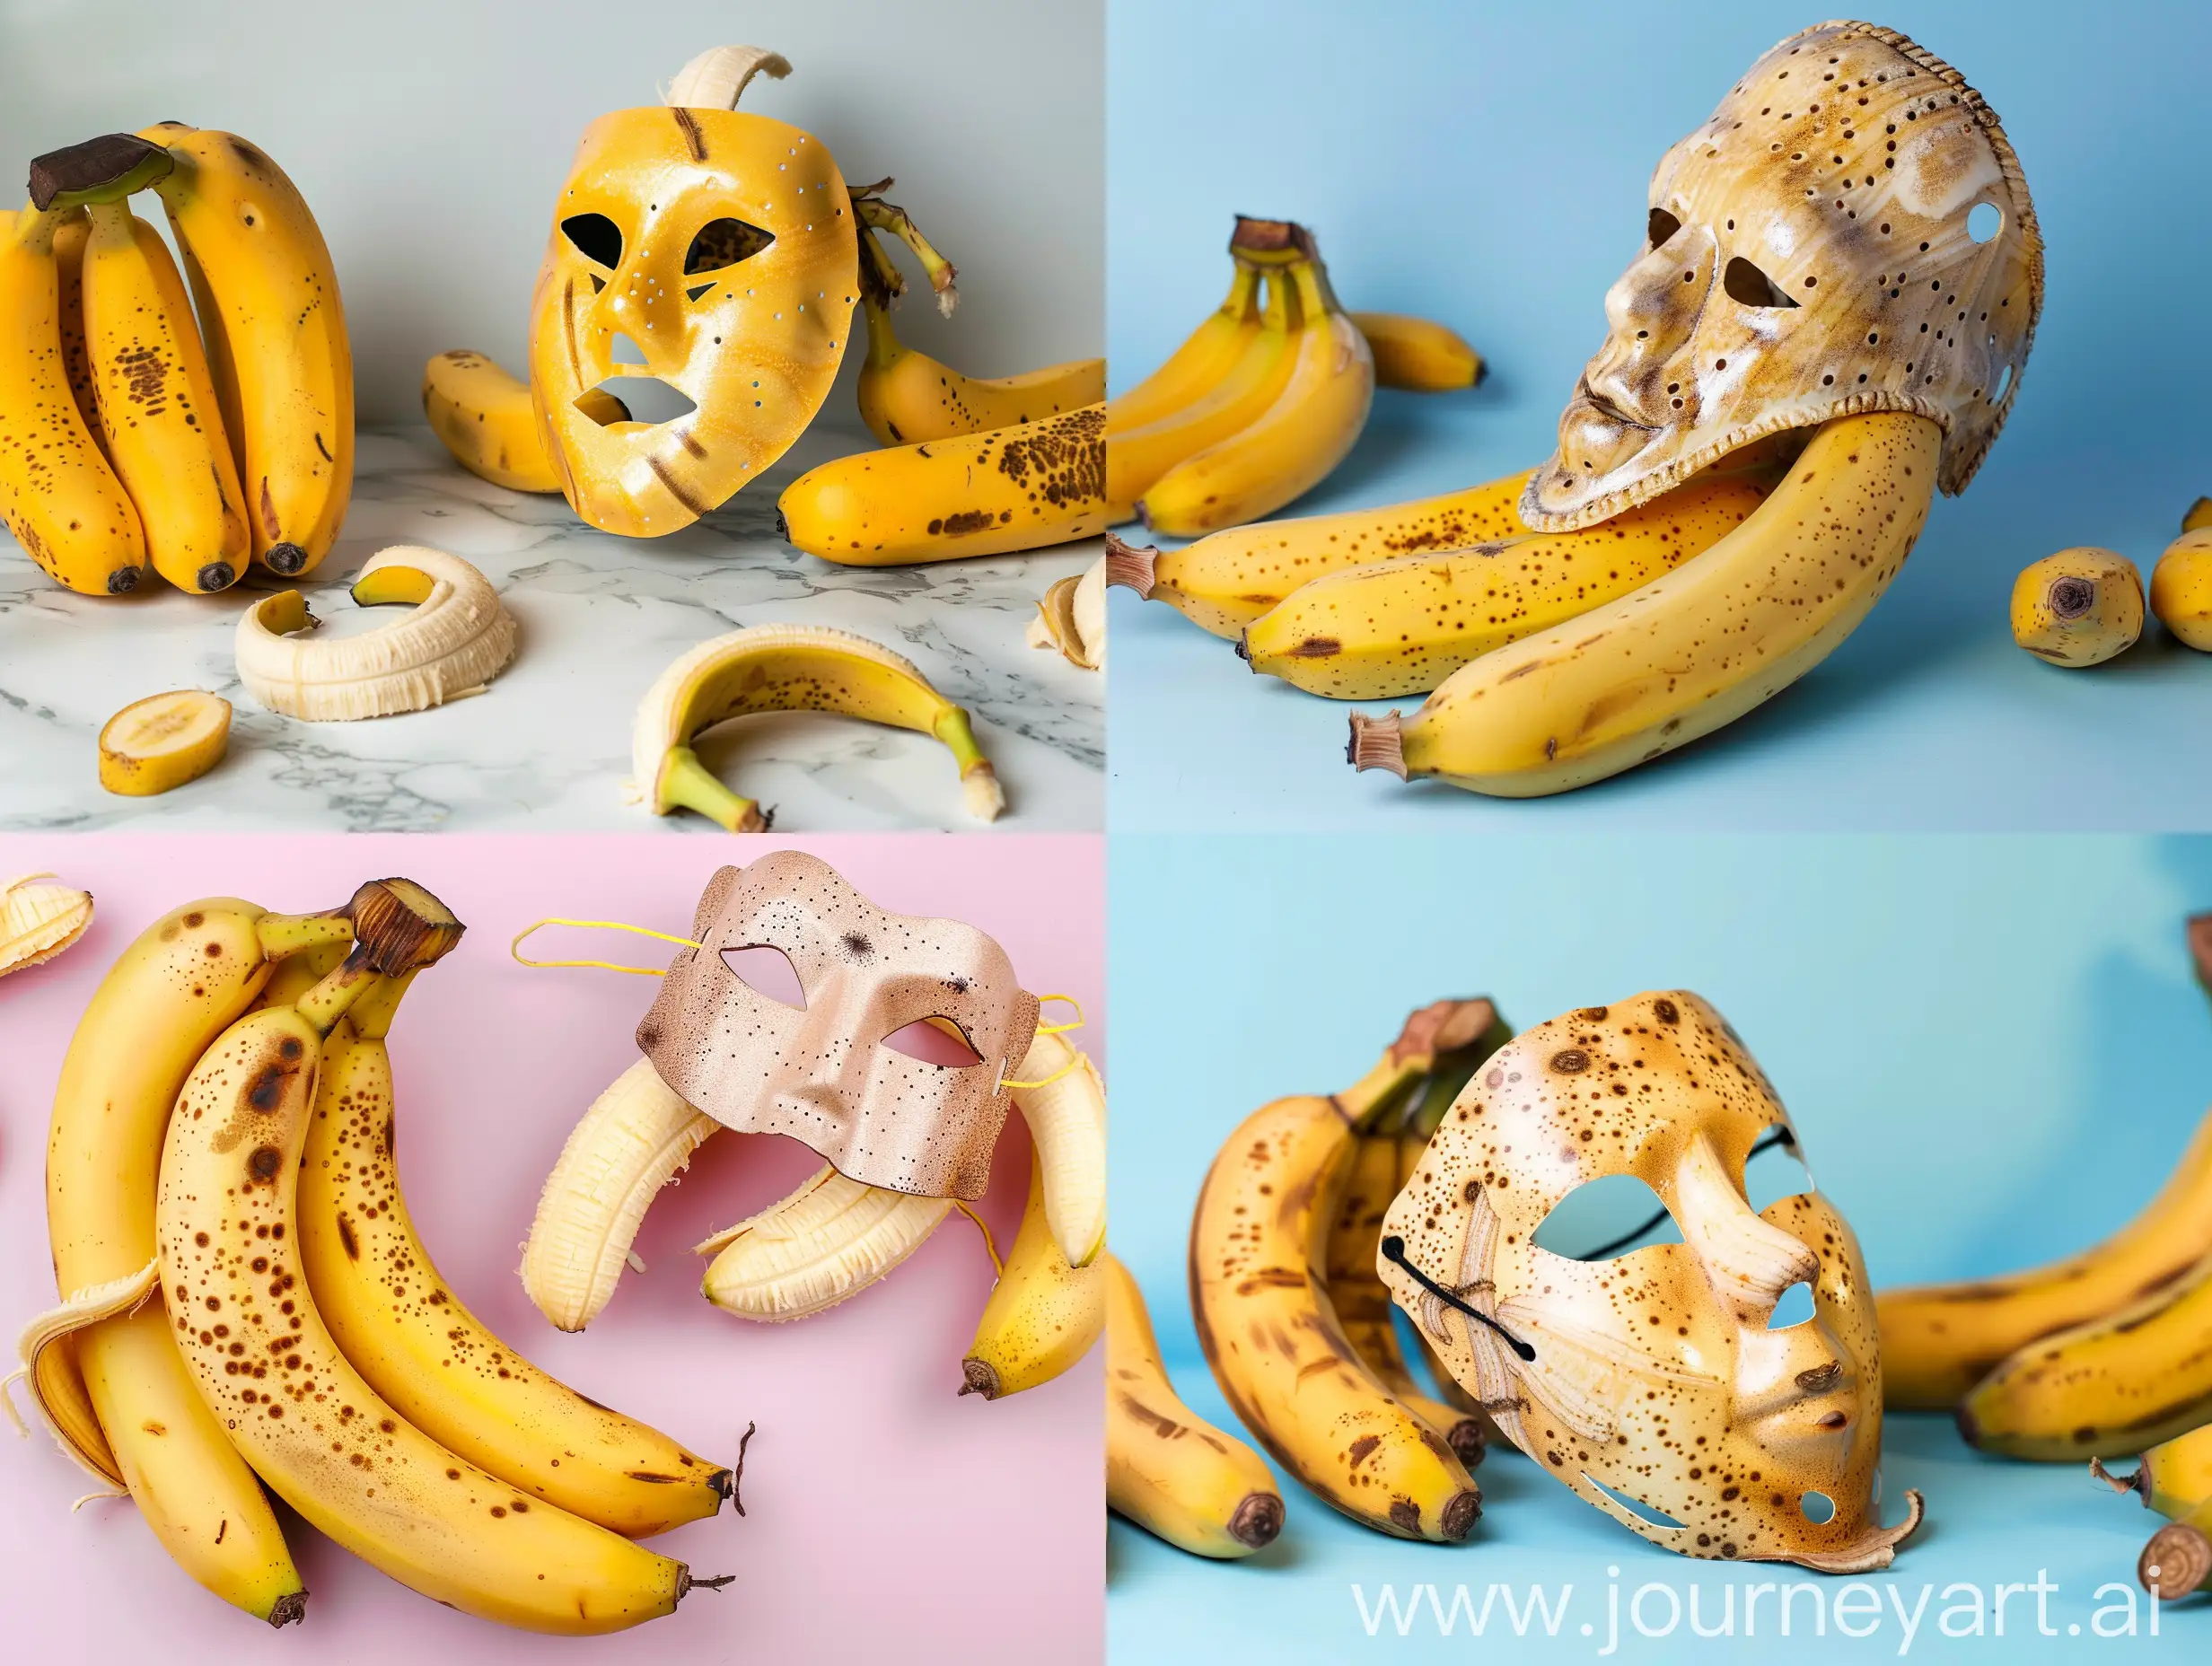 Real photo of banana mask with some bananas